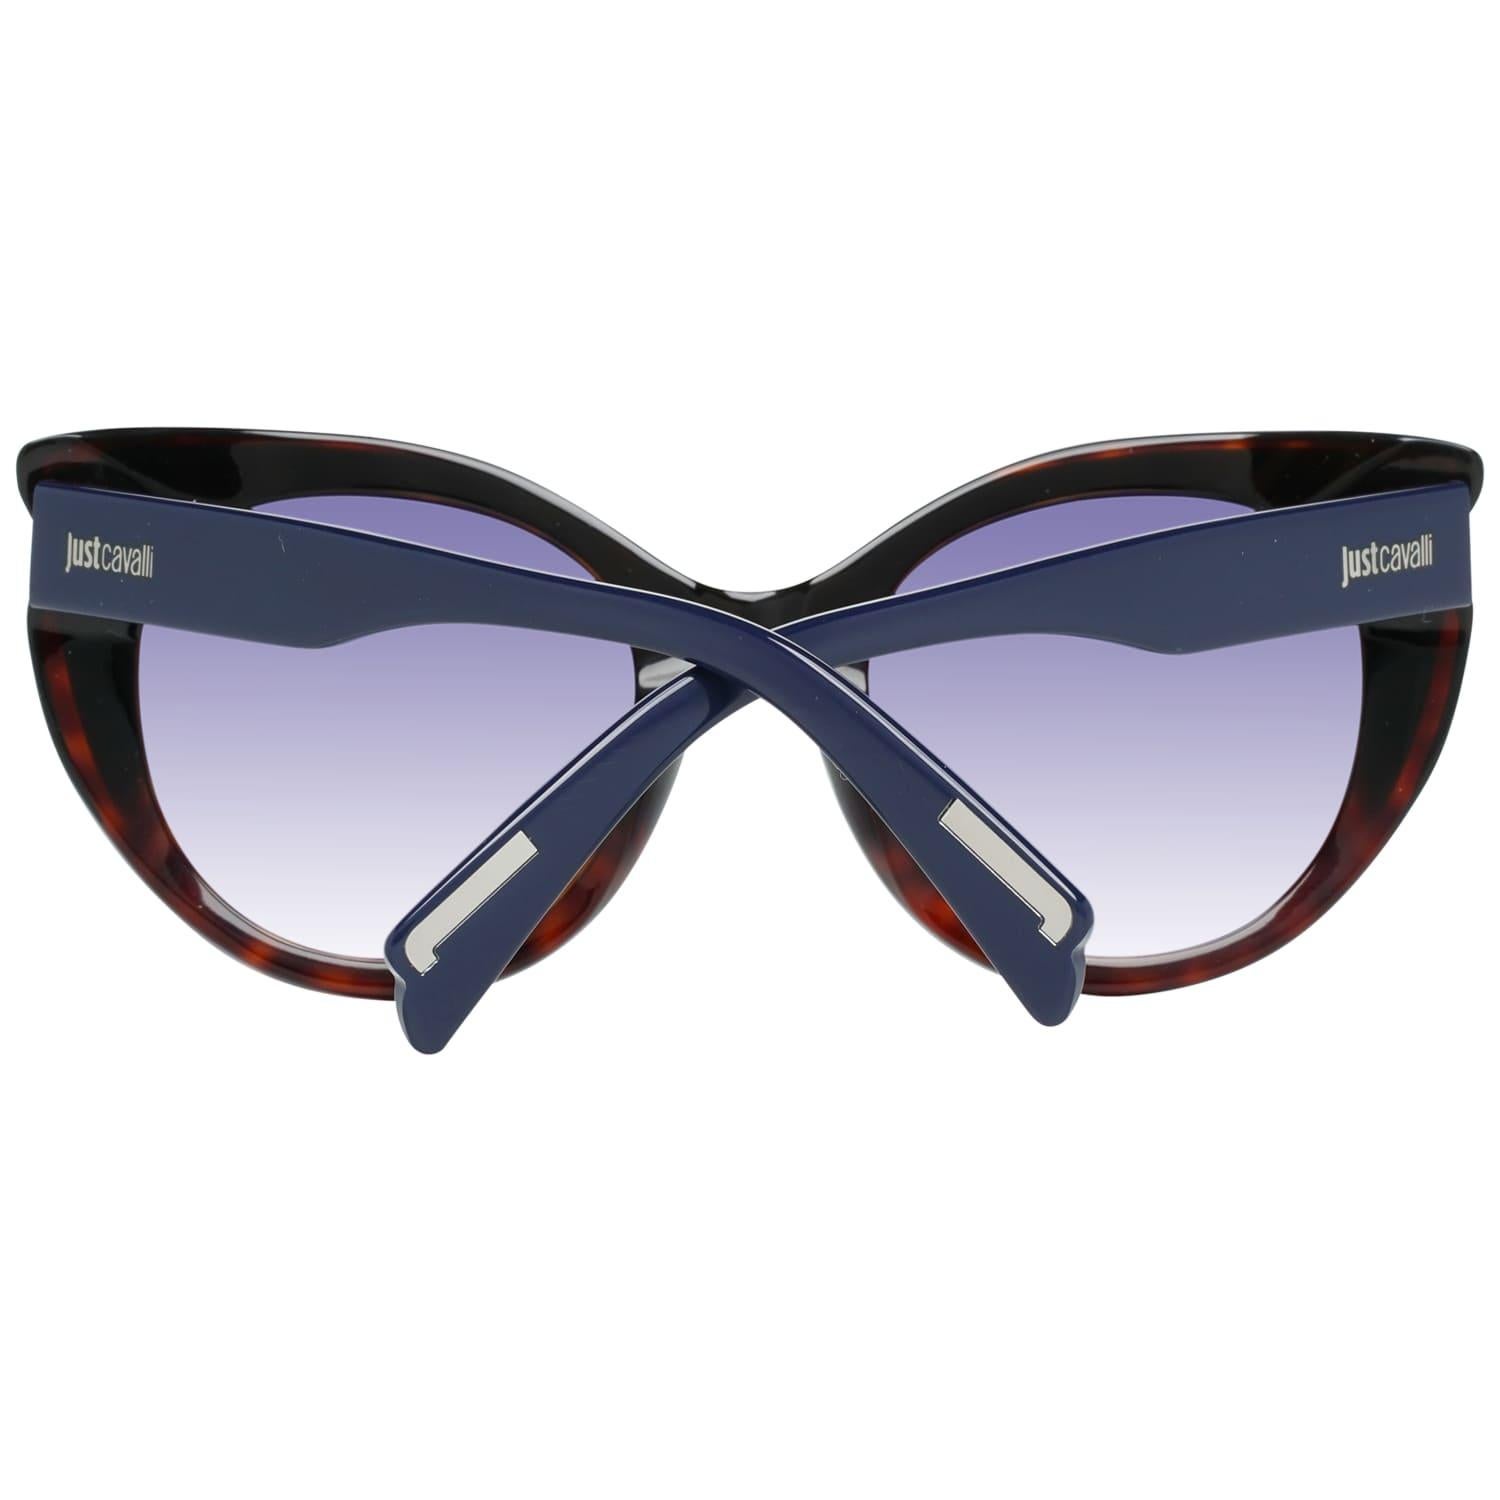 Just Cavalli Mint Women Blue Sunglasses JC786S 5392W 53-23-150 mm 2